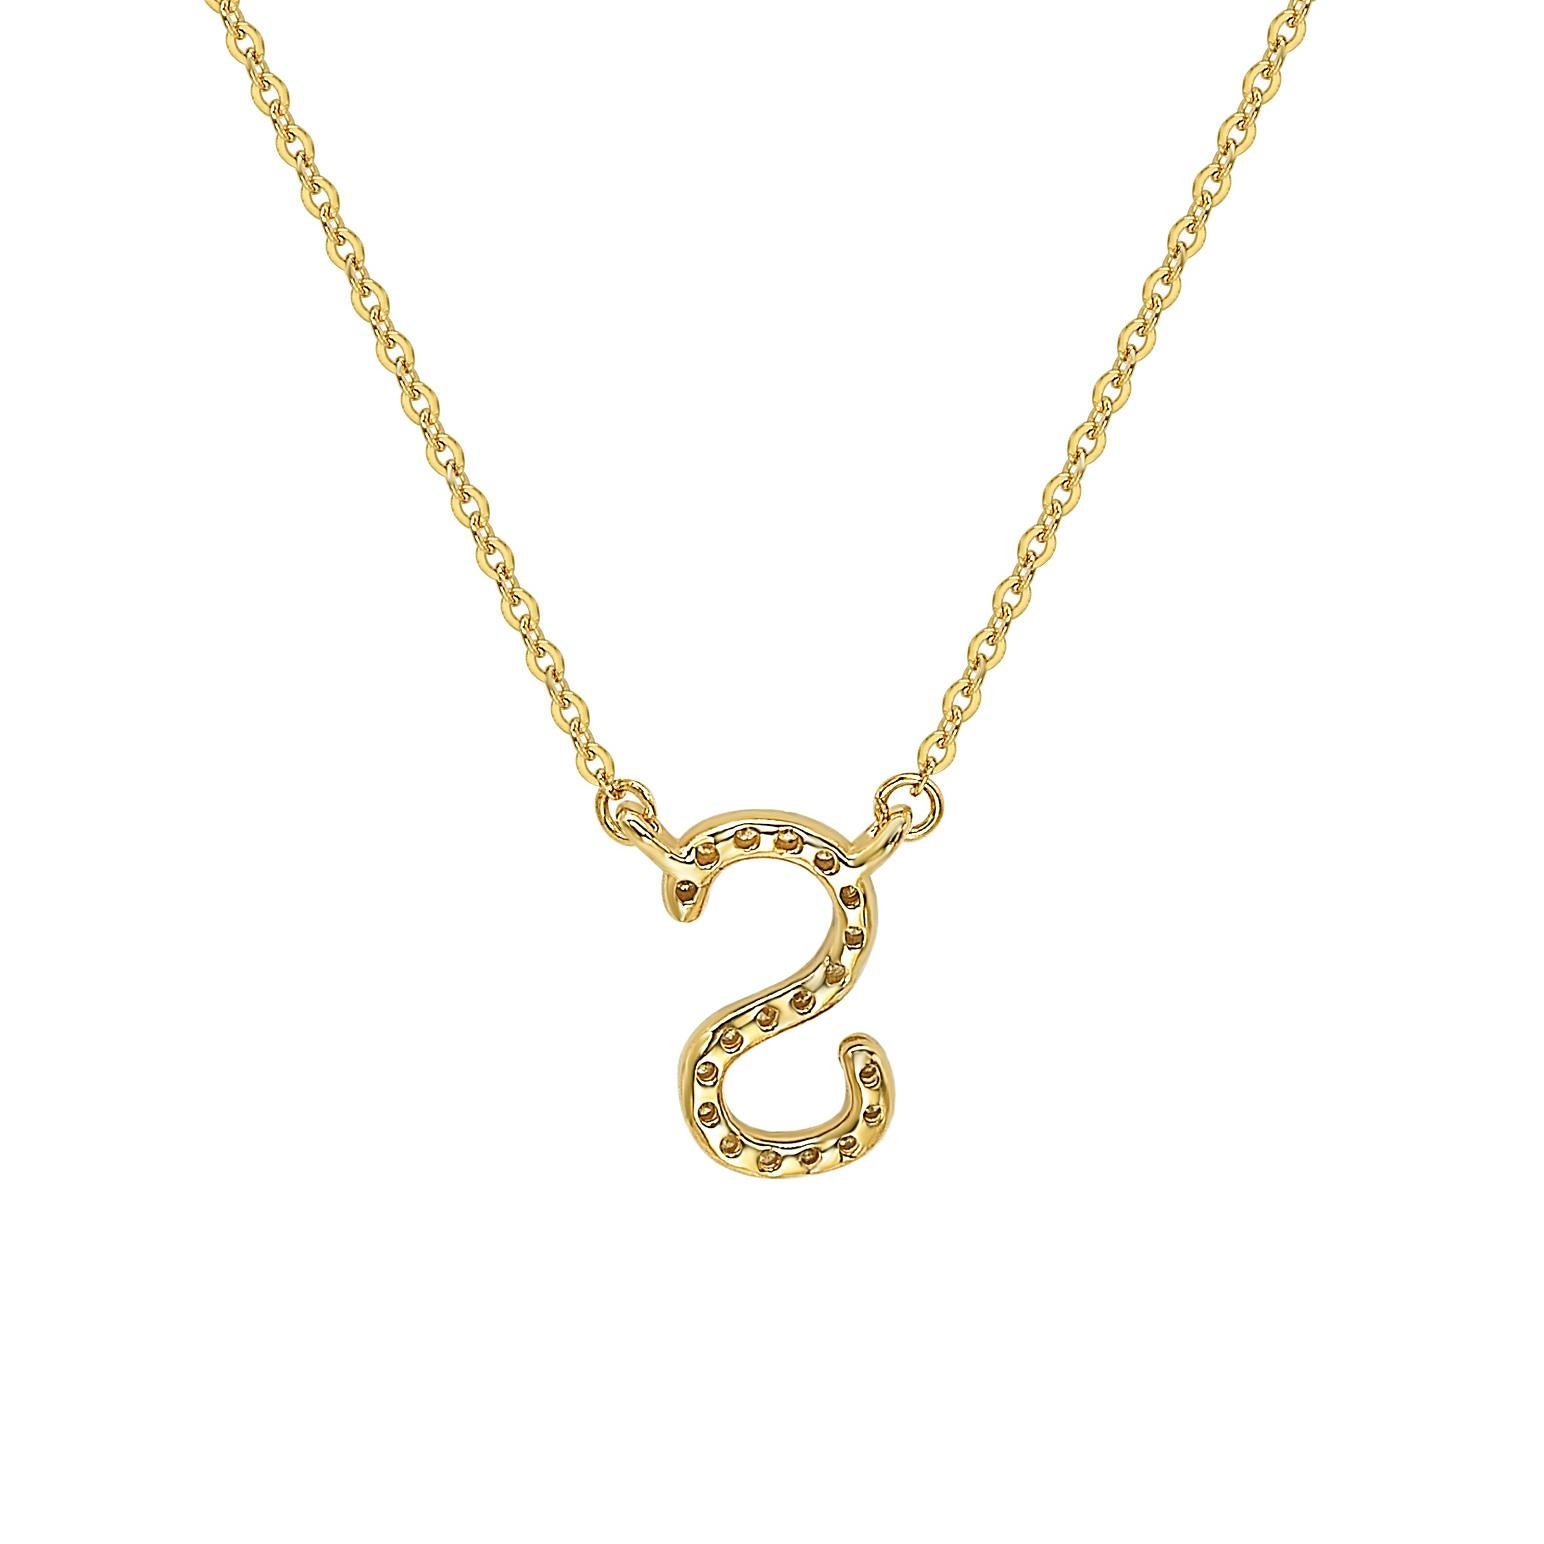 Diese atemberaubende, personalisierte Suzy Levian Brief-Halskette besteht aus natürlichen Diamanten, die von Hand in 14-karätiges Gelbgold gefasst wurden. Es ist das perfekte individuelle Geschenk, um jemandem mitzuteilen, dass man an ihn oder sie